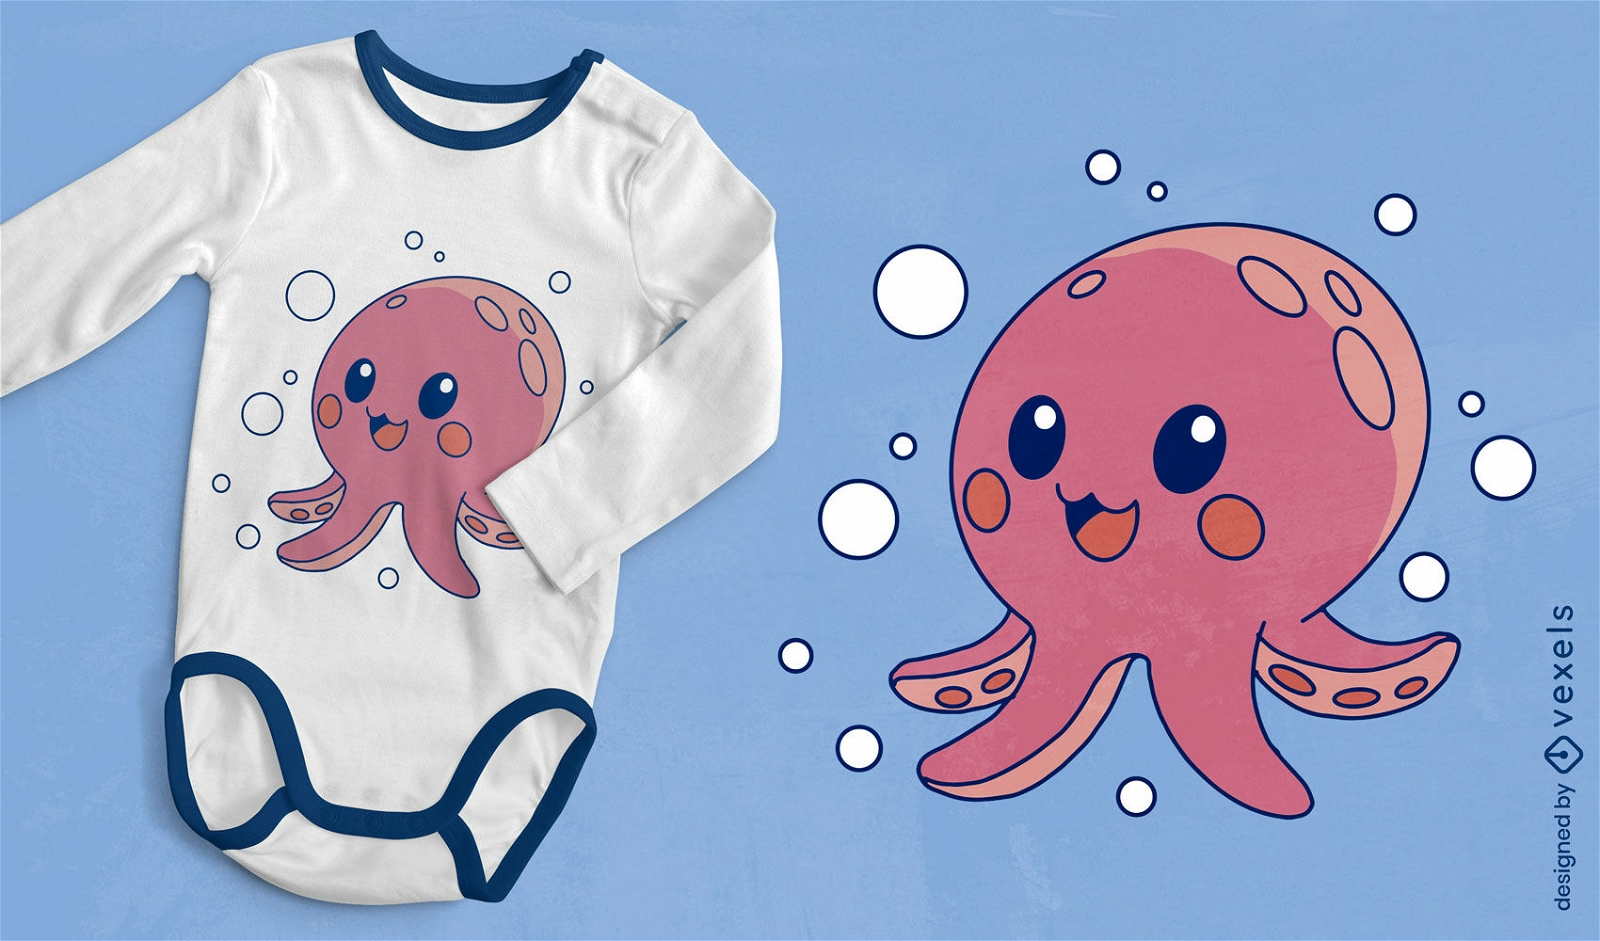 Cute cartoon octopus t-shirt design